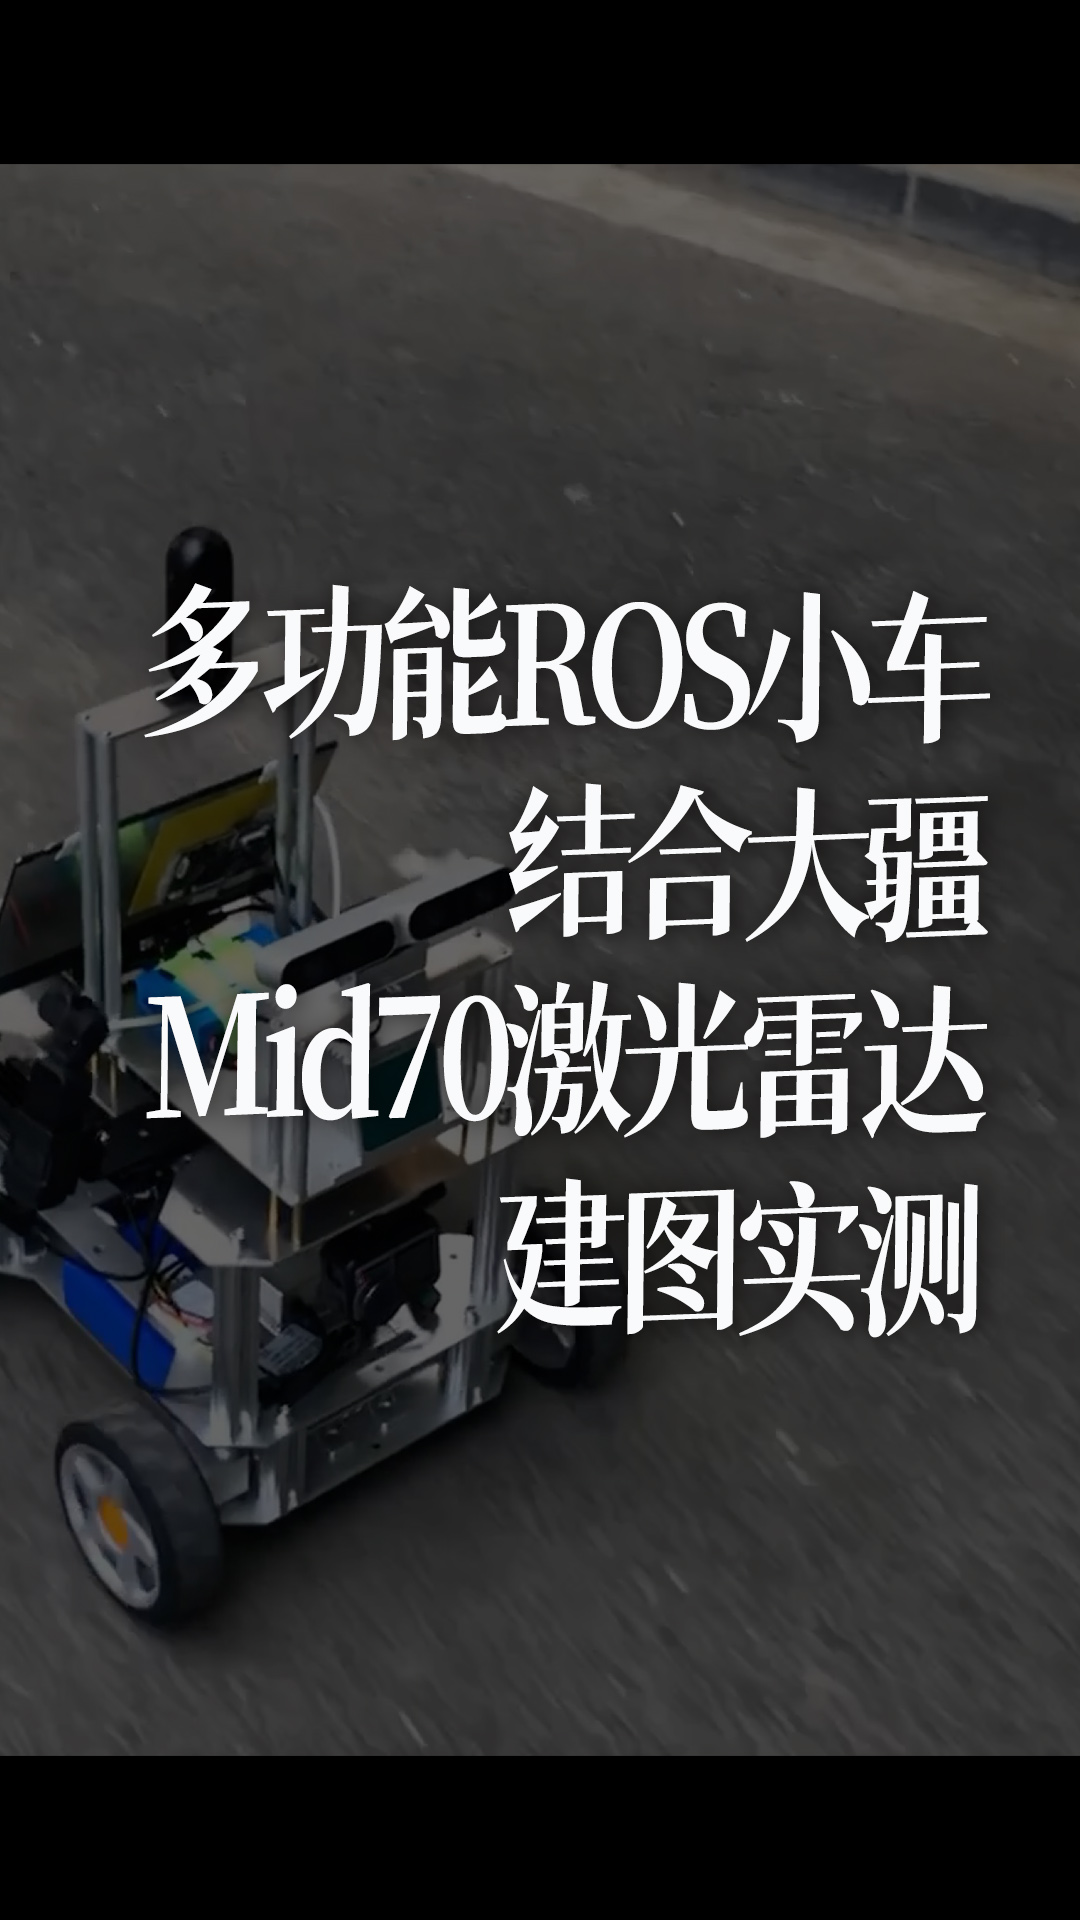 多功能ROS小车结合大疆Mid70激光雷达建图实测